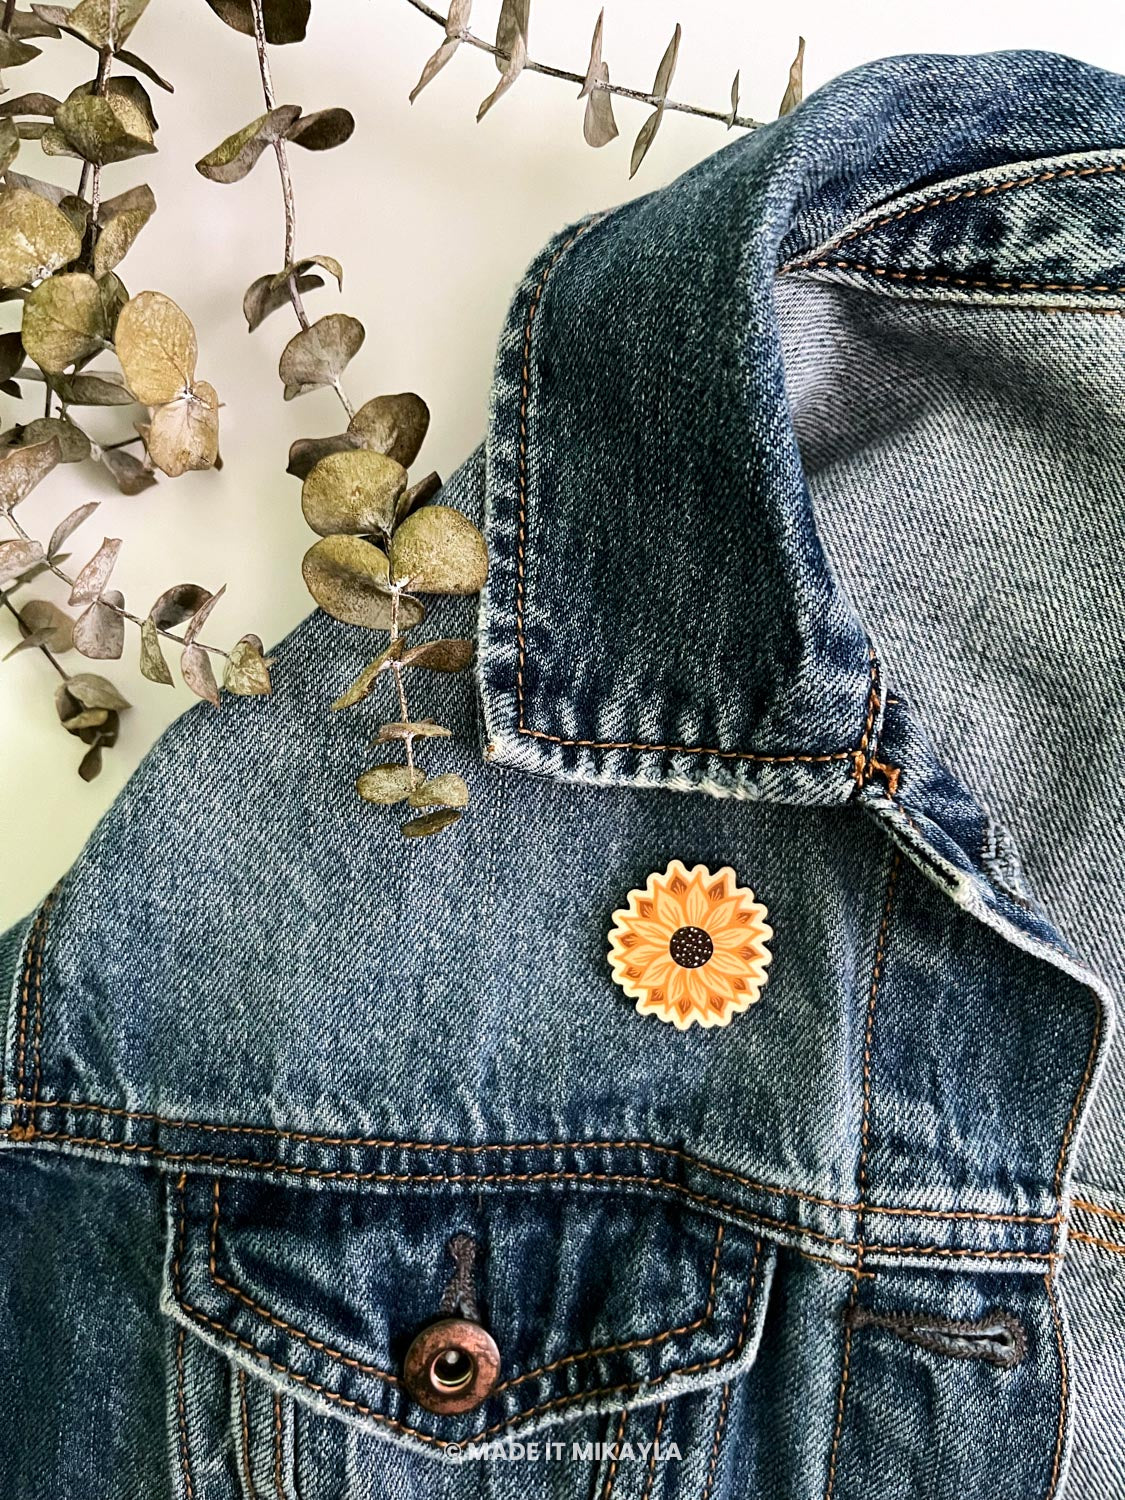 Sunflower Wooden Pin | MadeItMikayla